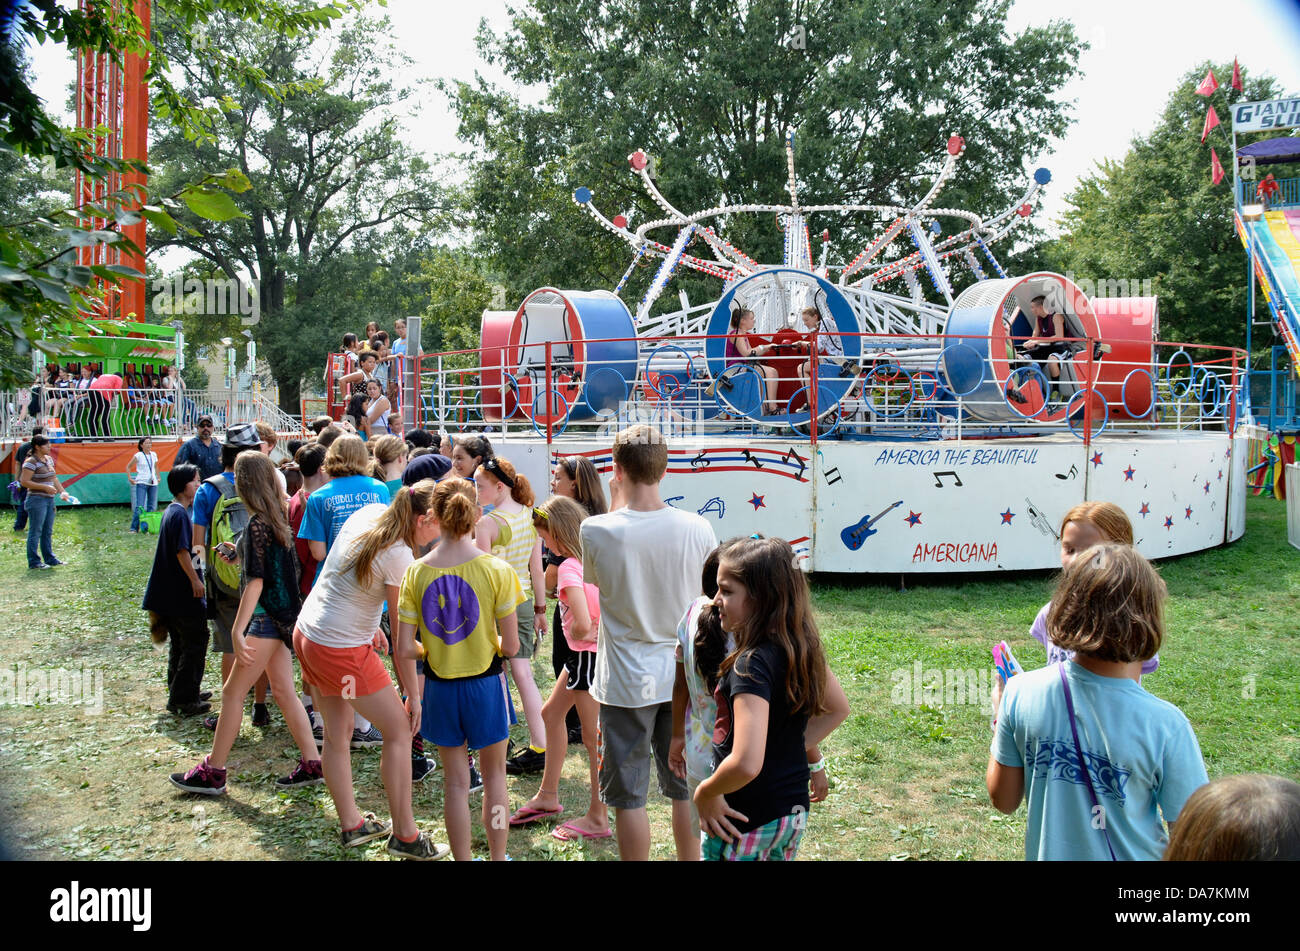 Las personas se alinean para carnavales en Greenbelt, MD Foto de stock